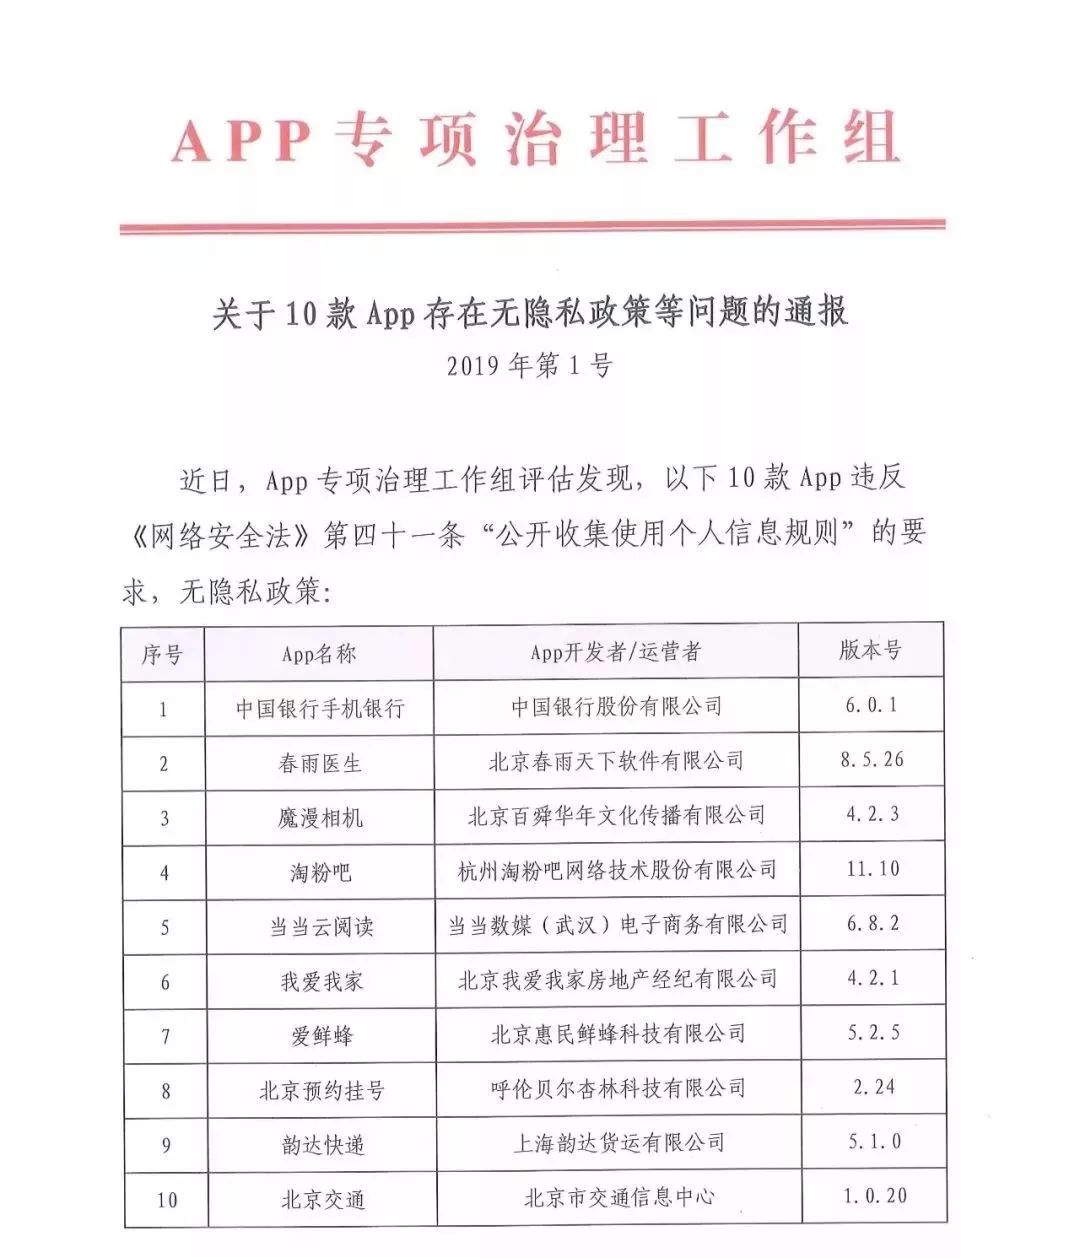 违法 中国银行 韵达快递等30款App因隐私问题被通报